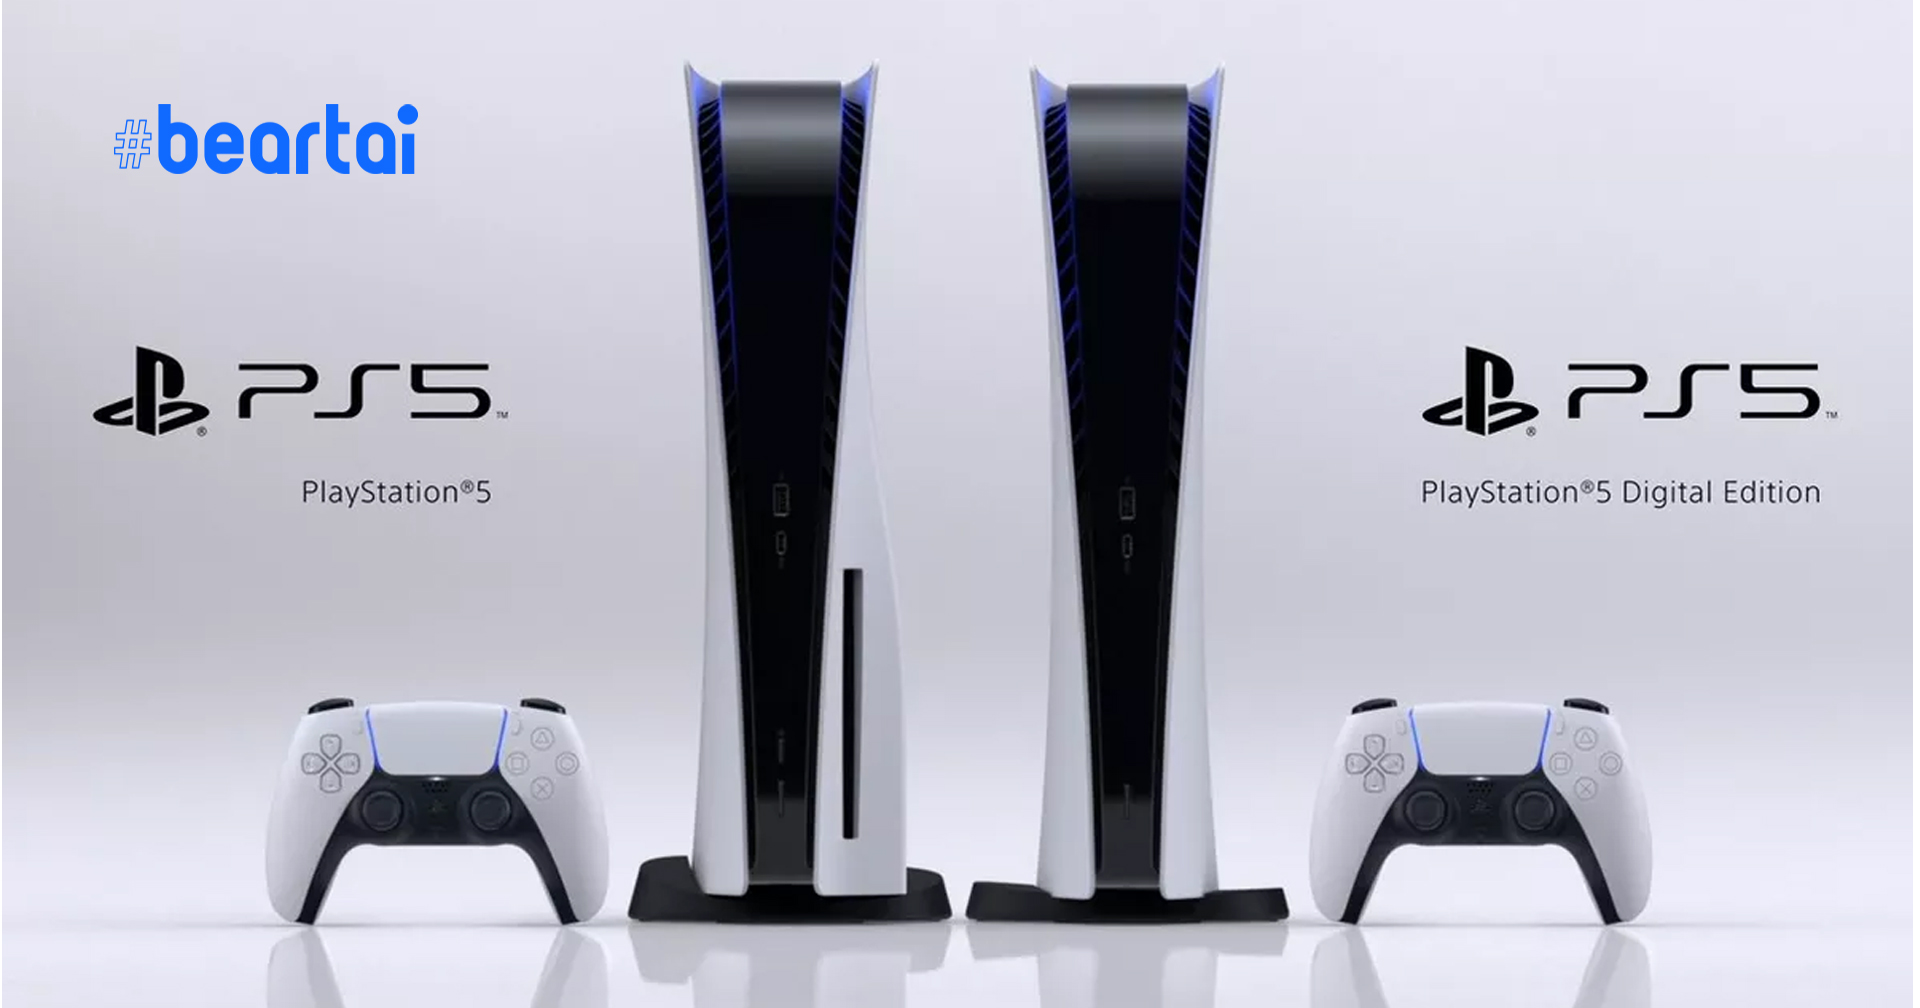 เปิดราคา PlayStation 5 ทั้งสองรุ่นอย่างเป็นทางการ เริ่มจำหน่ายจริง 12 พฤศจิกายนนี้